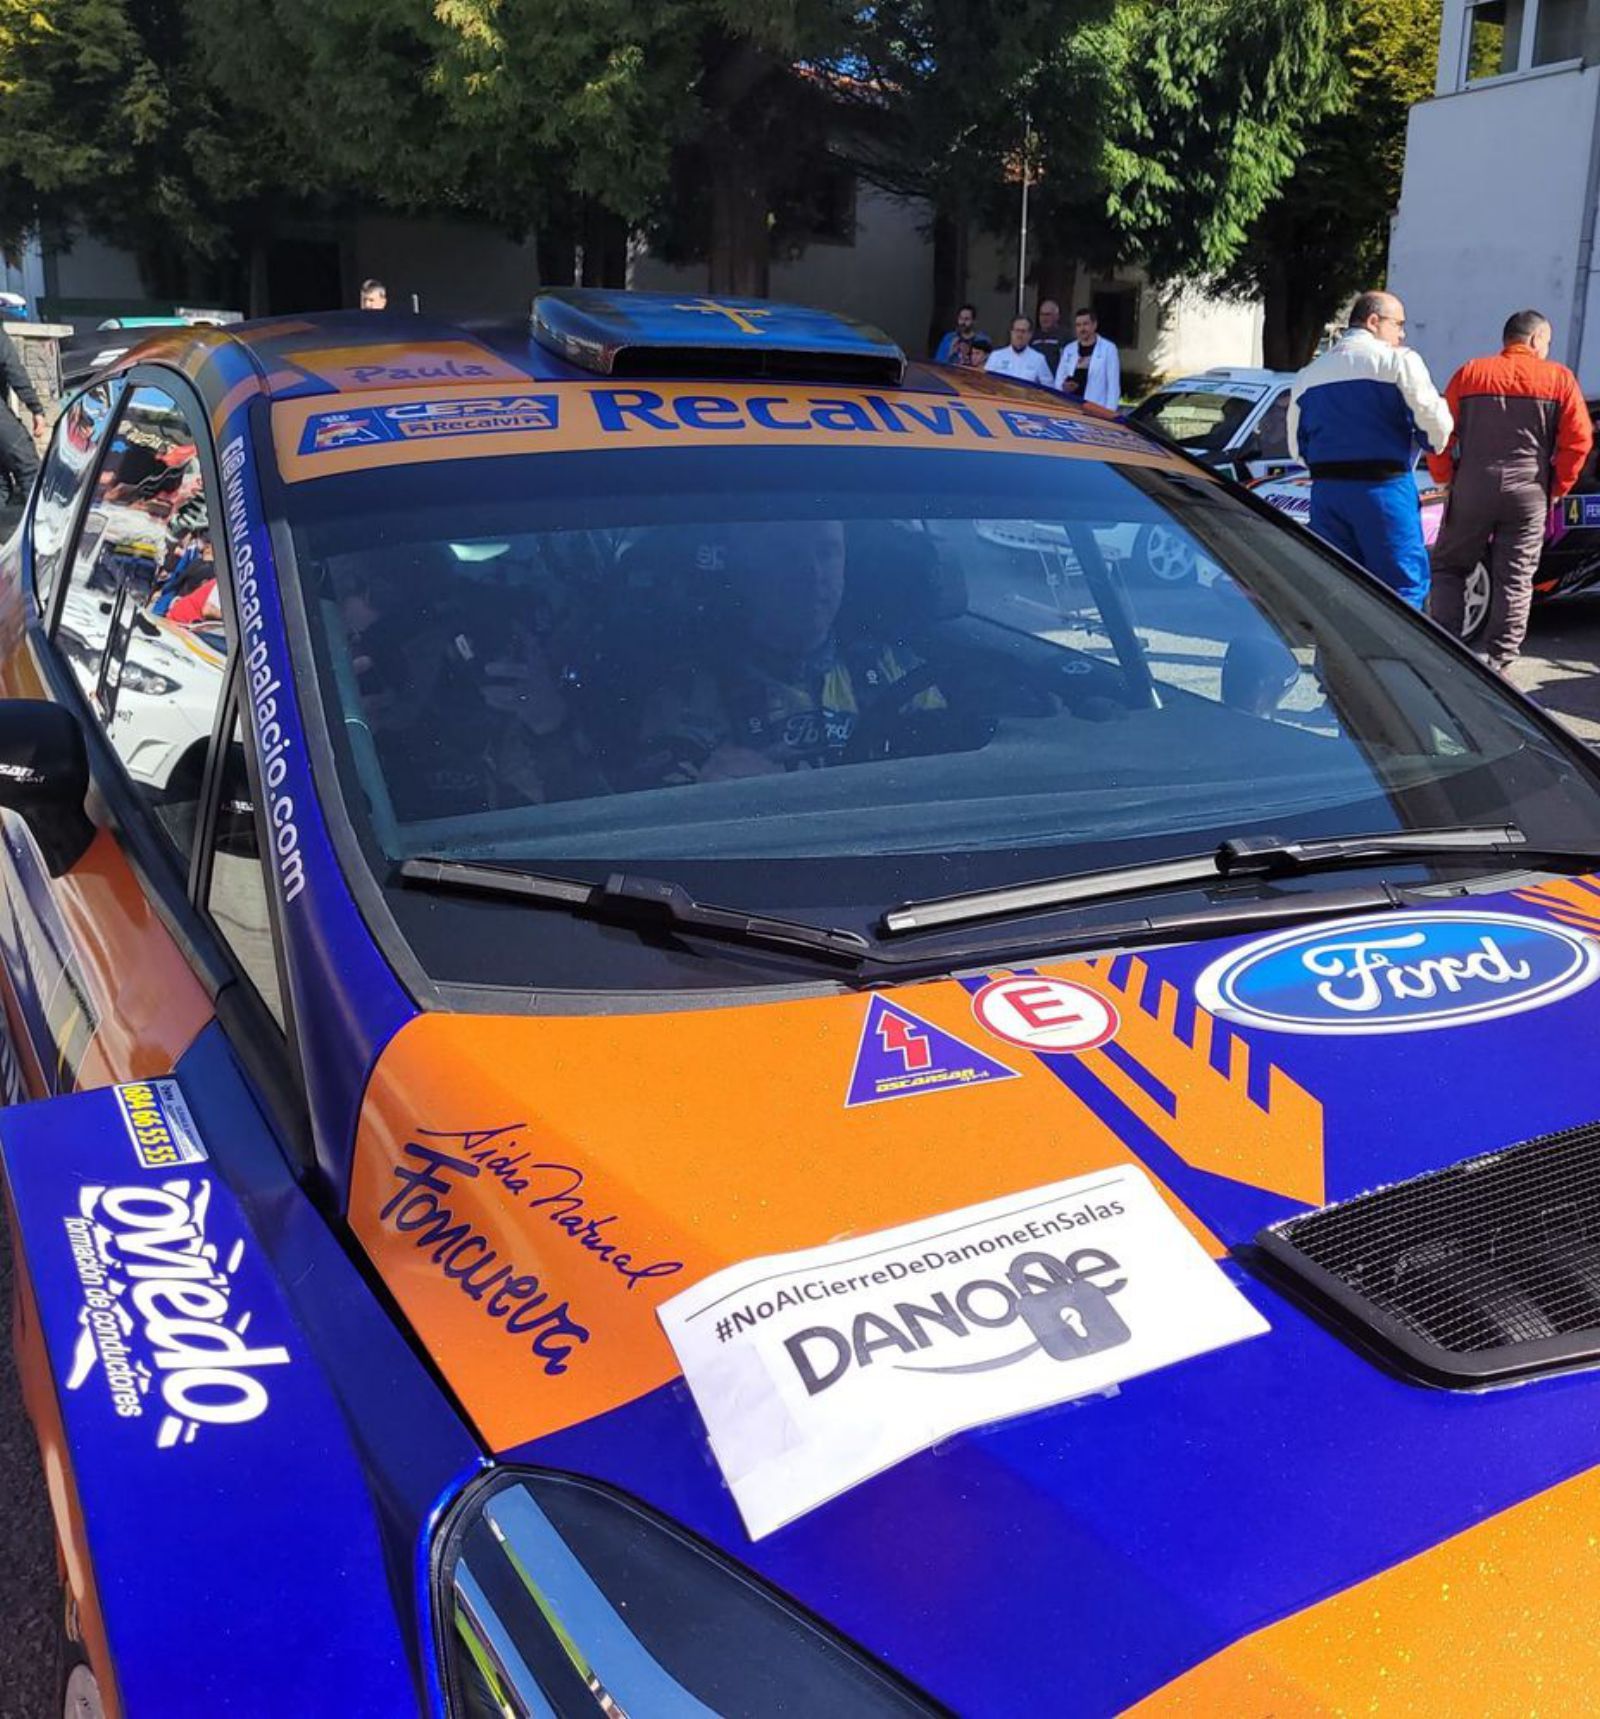 Uno de los vehículos participantes en el Rallye de La Espina con una pegatina contra el cierre de Danone.  